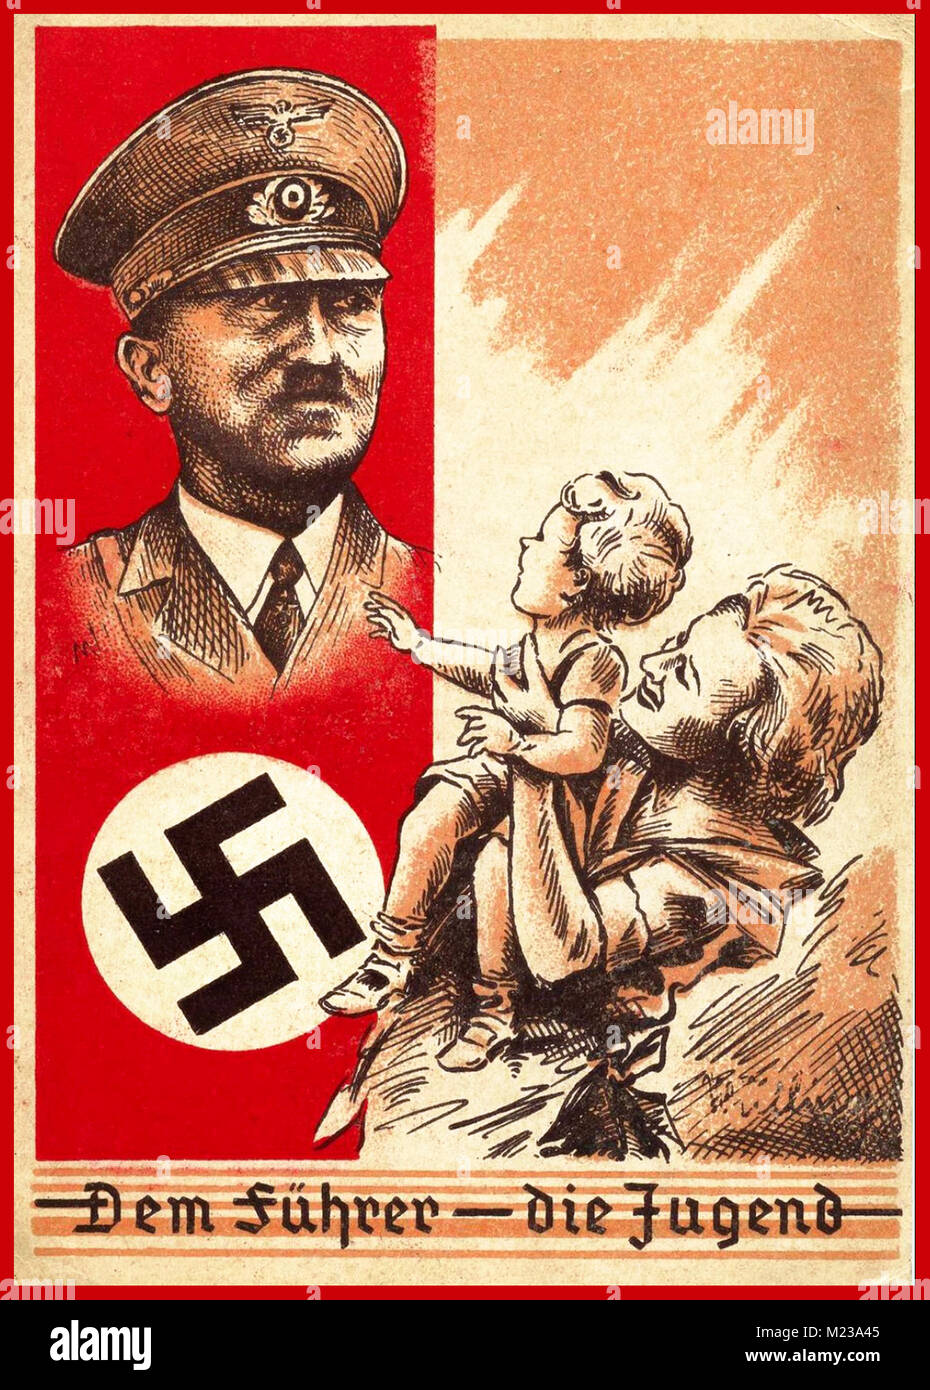 La Germania nazista degli anni '30 la cartolina del Poster di Propaganda 'DEM Führer - die Jugend' 'il capo- la gioventù' Adolf Hitler e swastika hanno caratterizzato con una madre e un bambino tipicamente tedesco di Aryan che lo guardano in ammirazione il loro eroe e salvatore della Germania nazista. Foto Stock